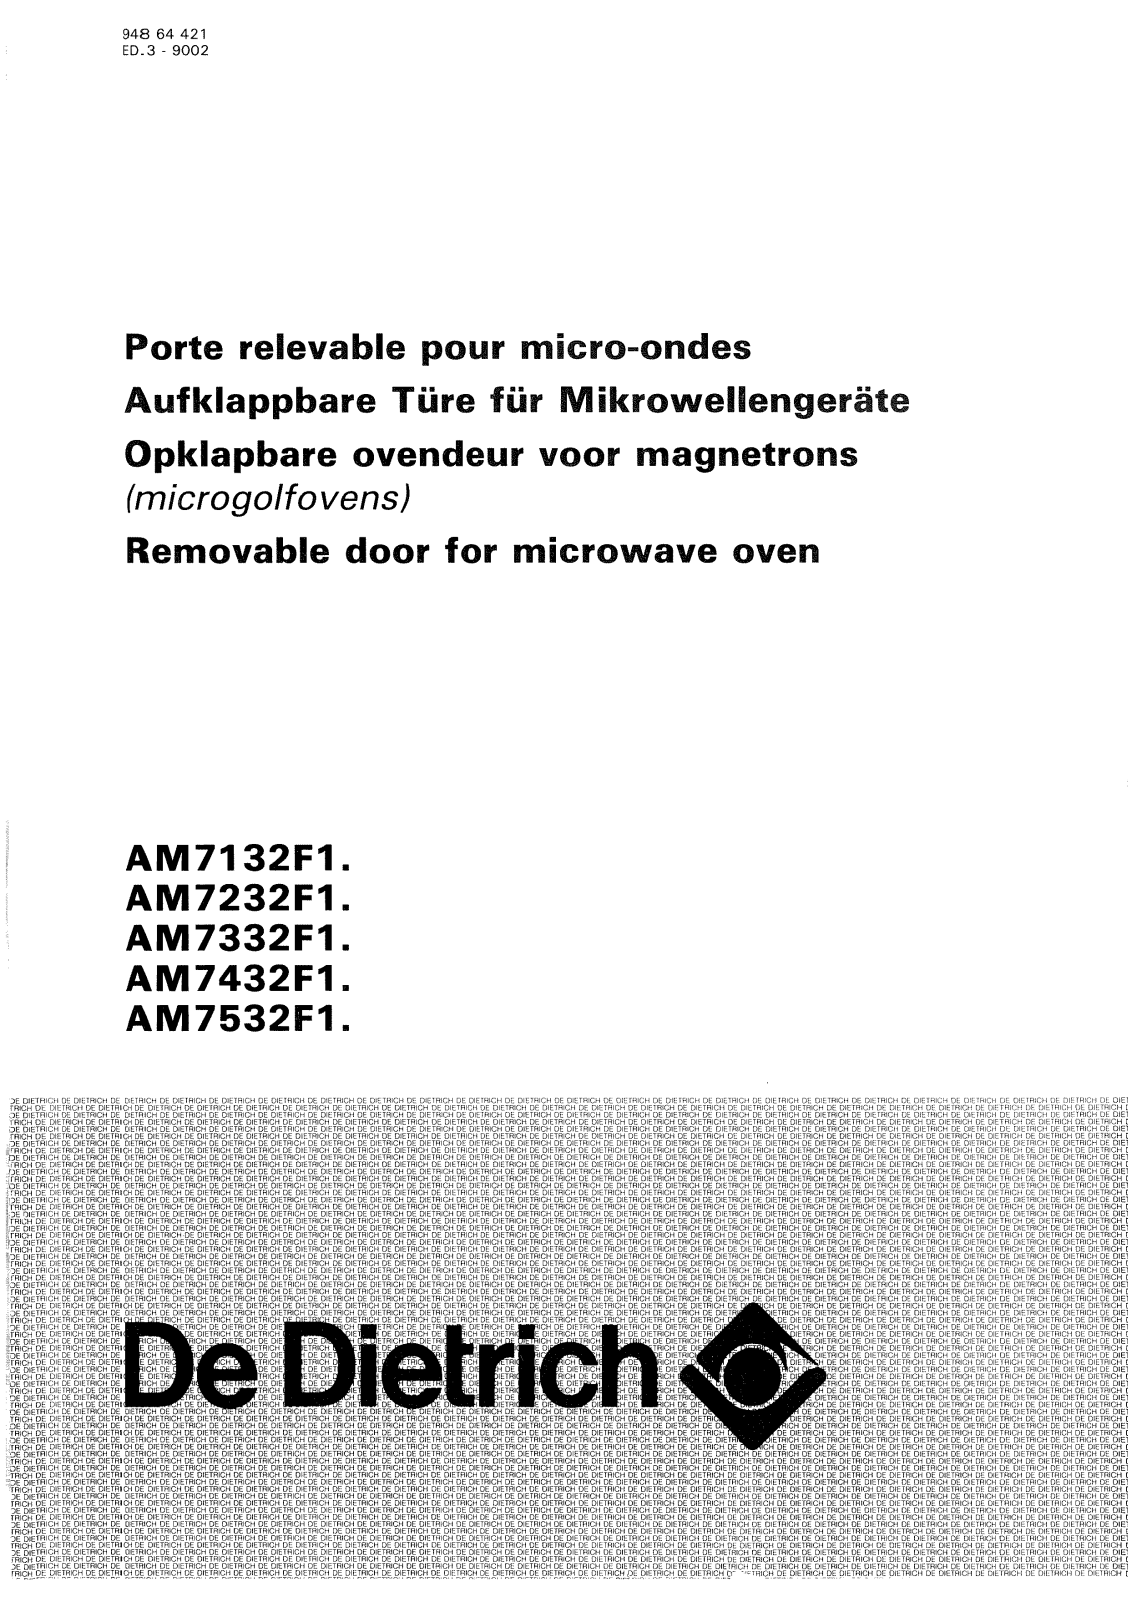 De dietrich AM7332F1, AM7132F1, AM7232F1, AM7432F1, AM7532F1 User Manual